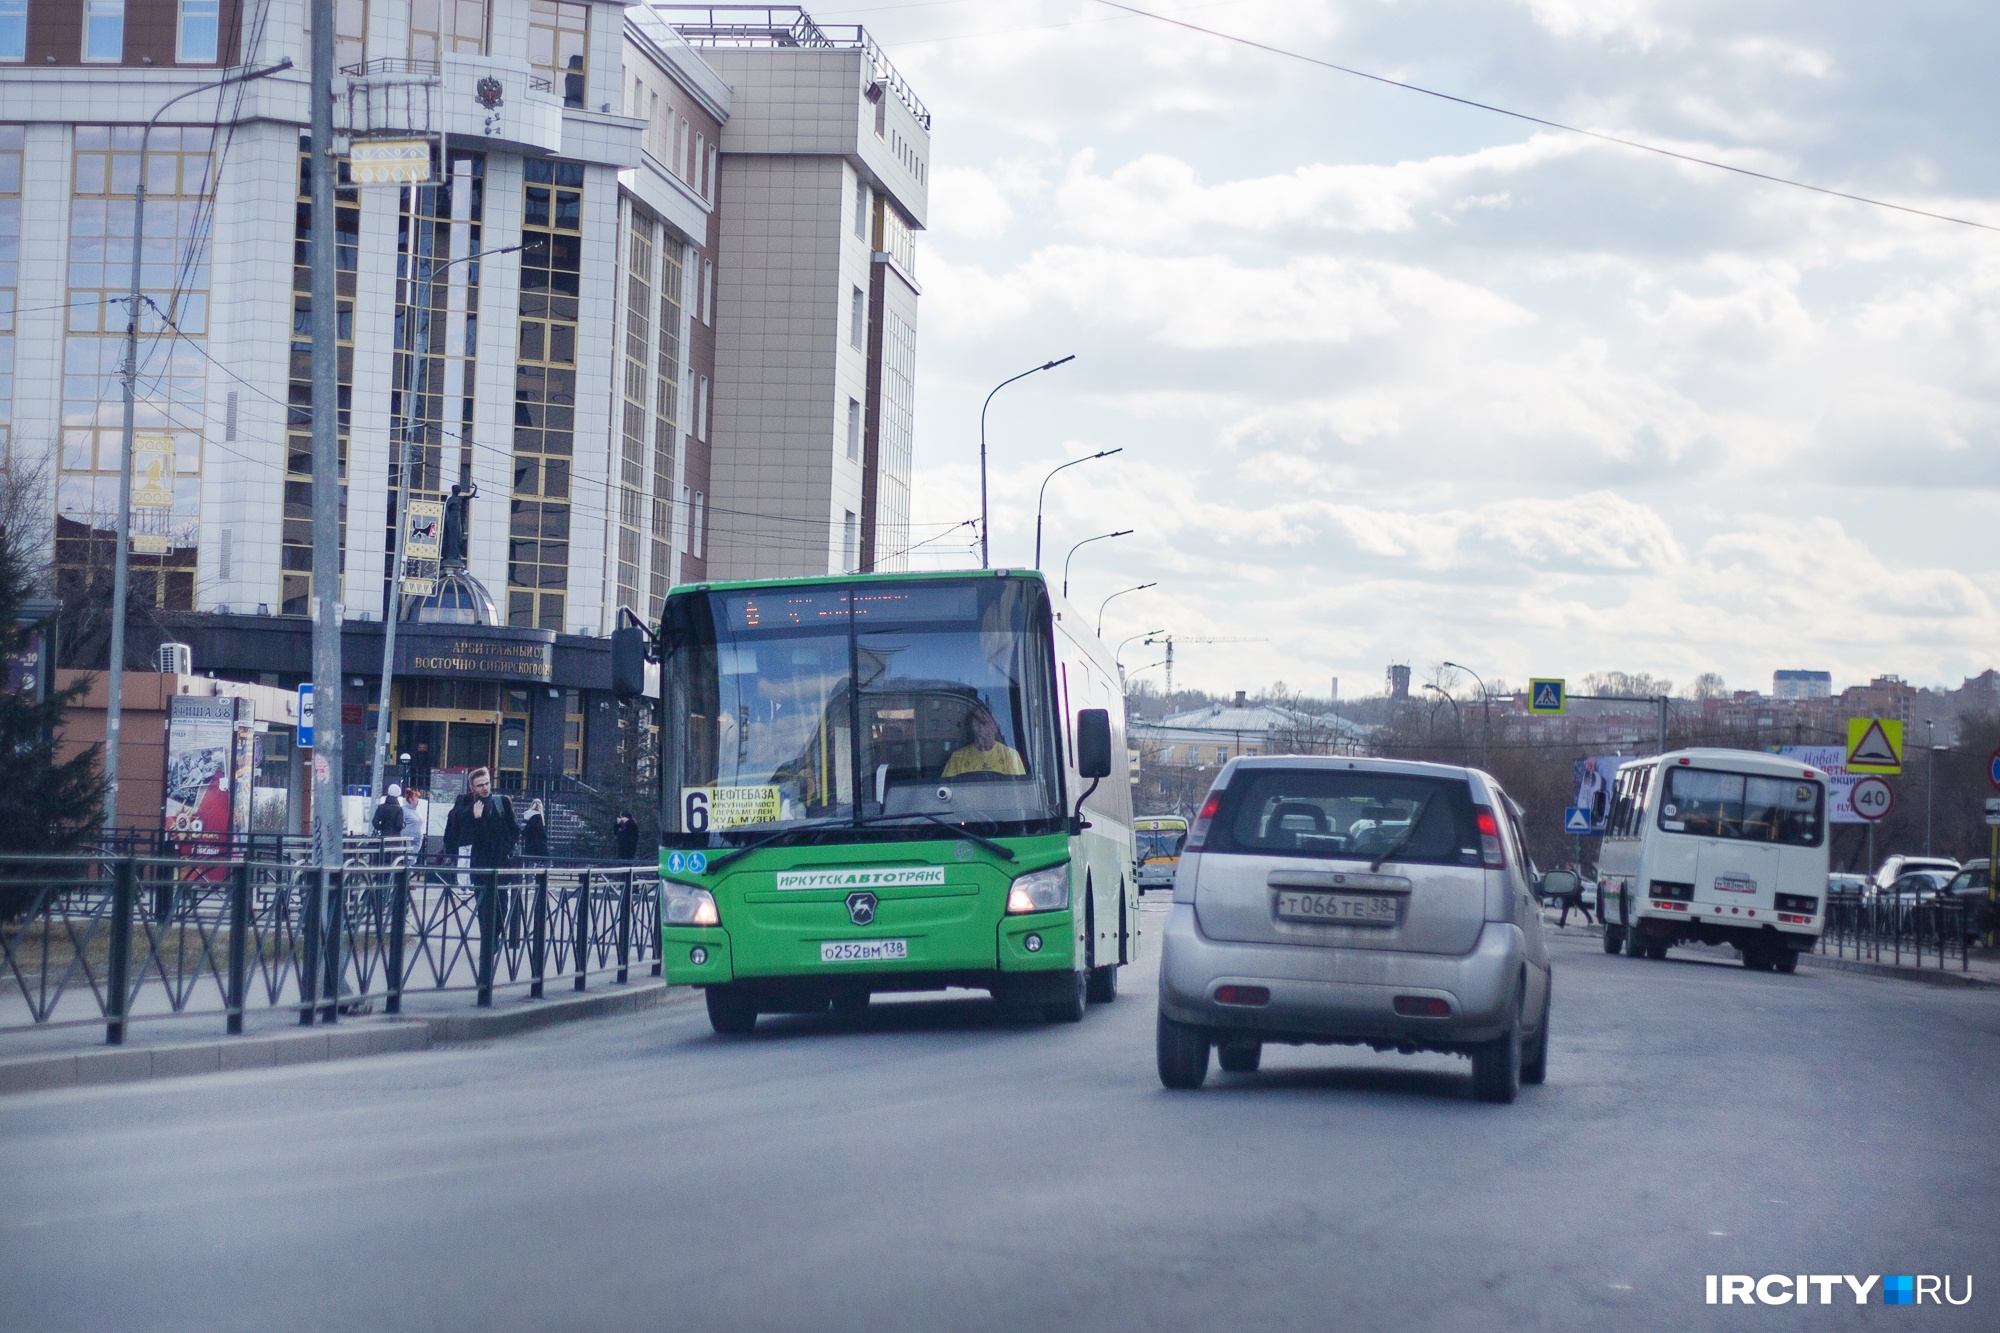 Цена на проезд в муниципальных автобусах Иркутска поднимется с 15 июля